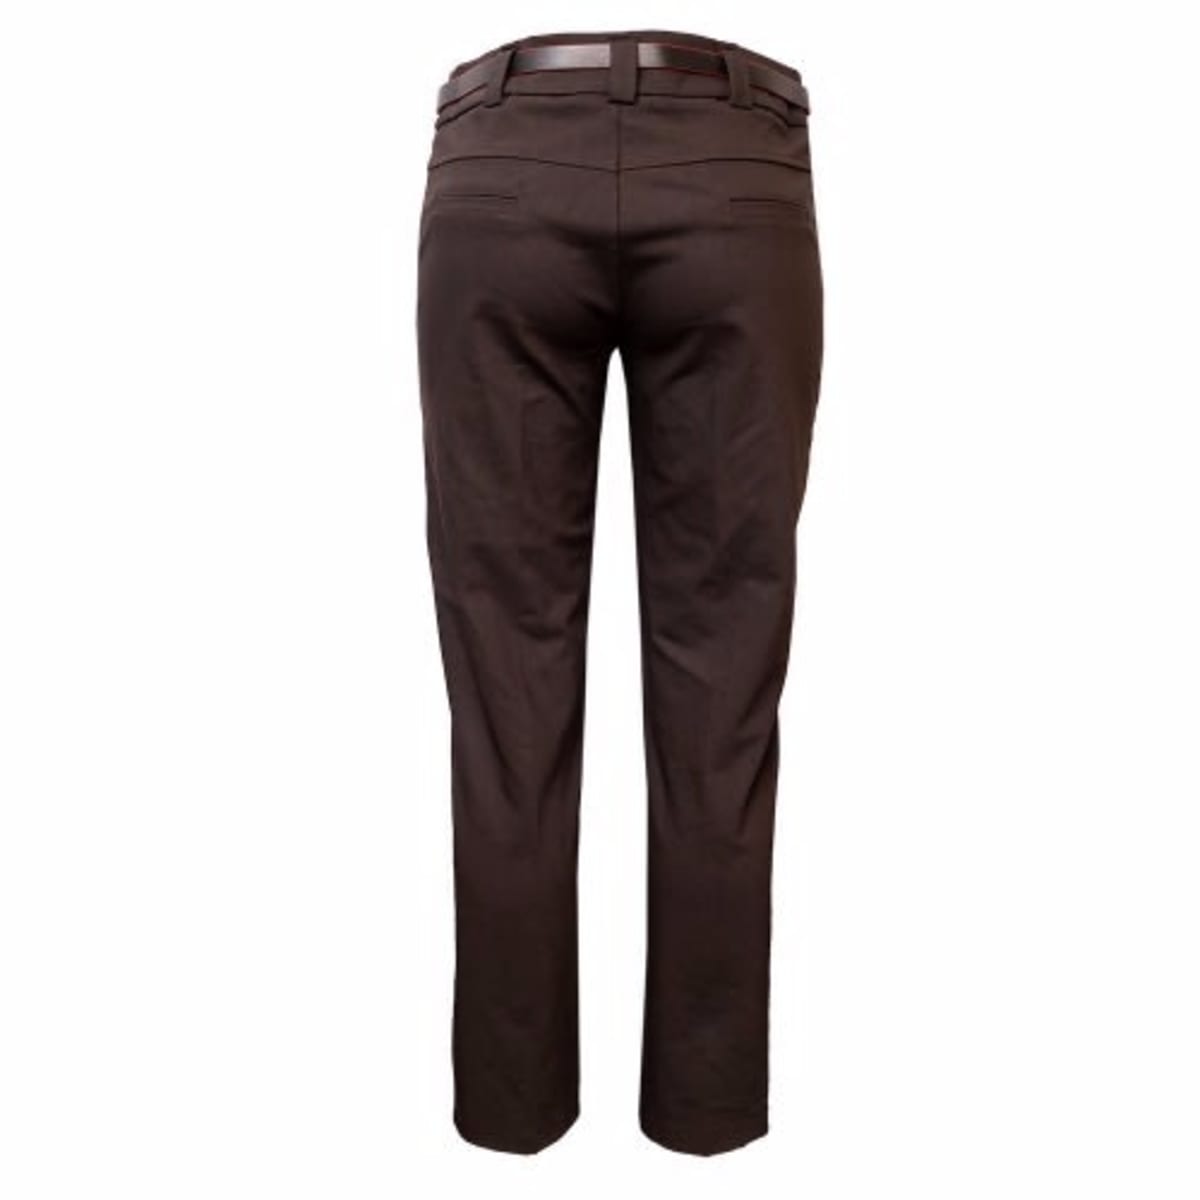 Coffee Brown Pants HF – Tulip Comfort Wear